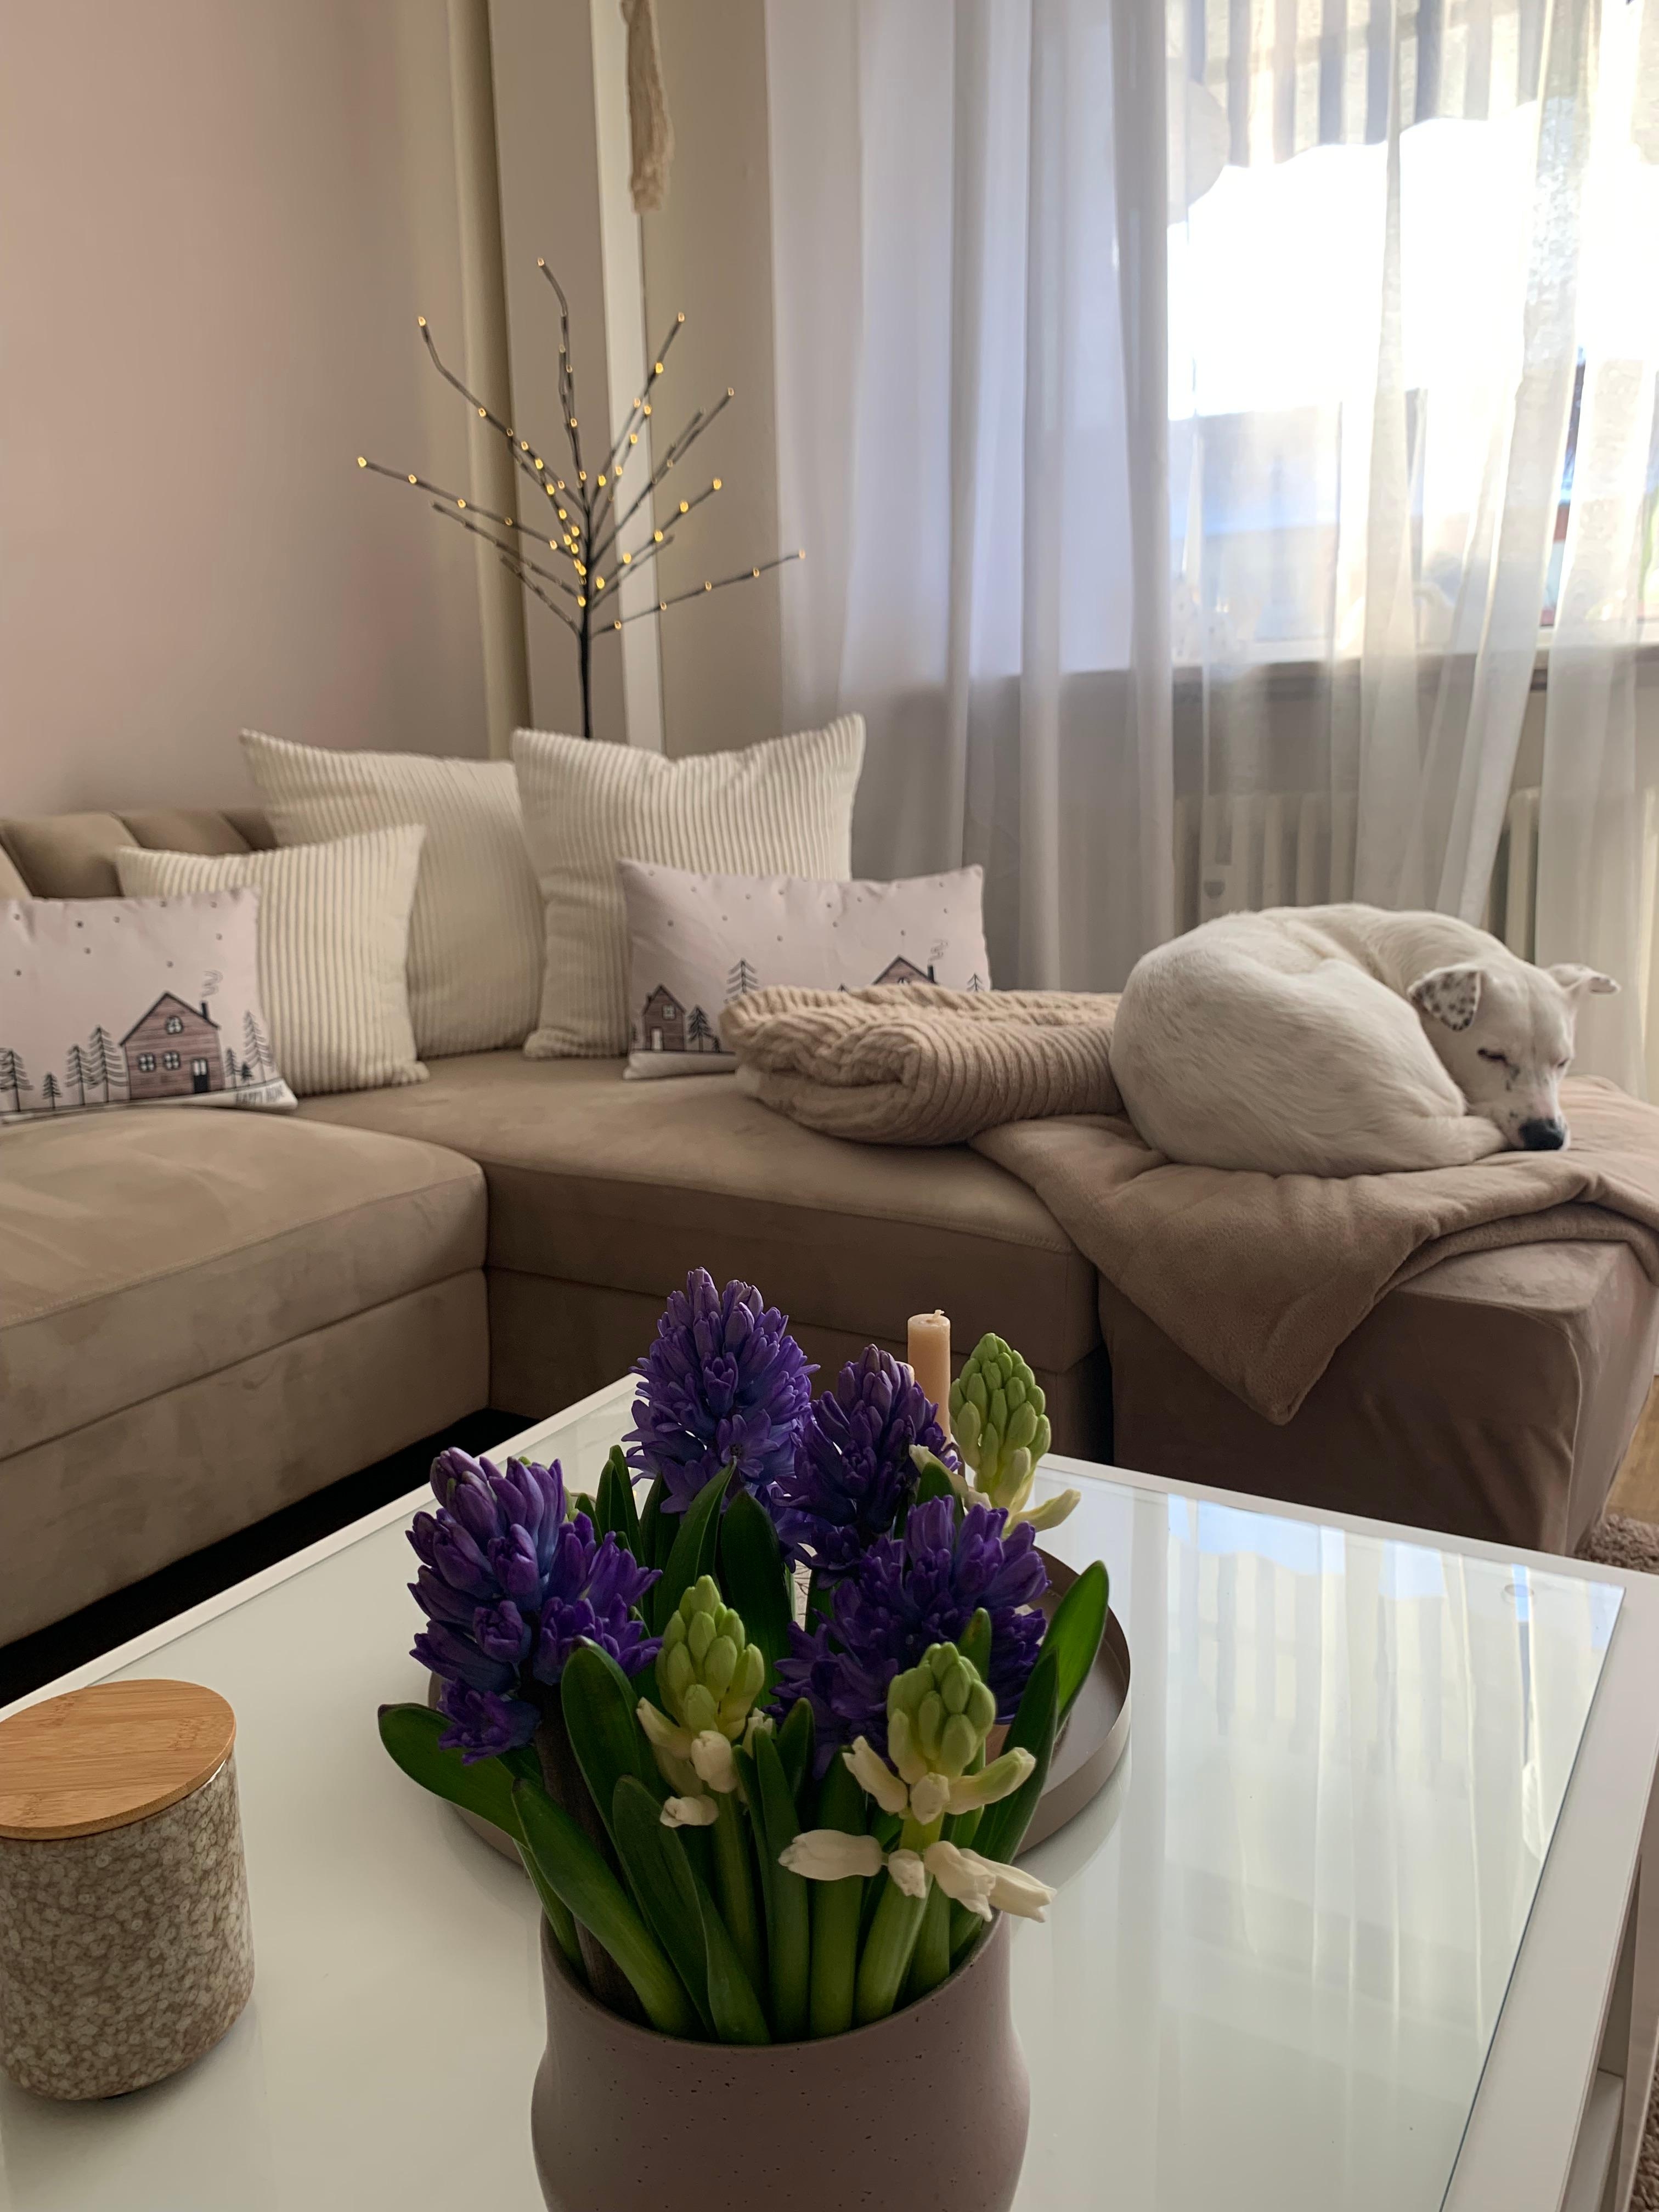 Wohnzimmer 
🤎🤍💜
#couch #couchtisch #flower #kerzen #vase #kissen #doglove #plaid #ledbaum 